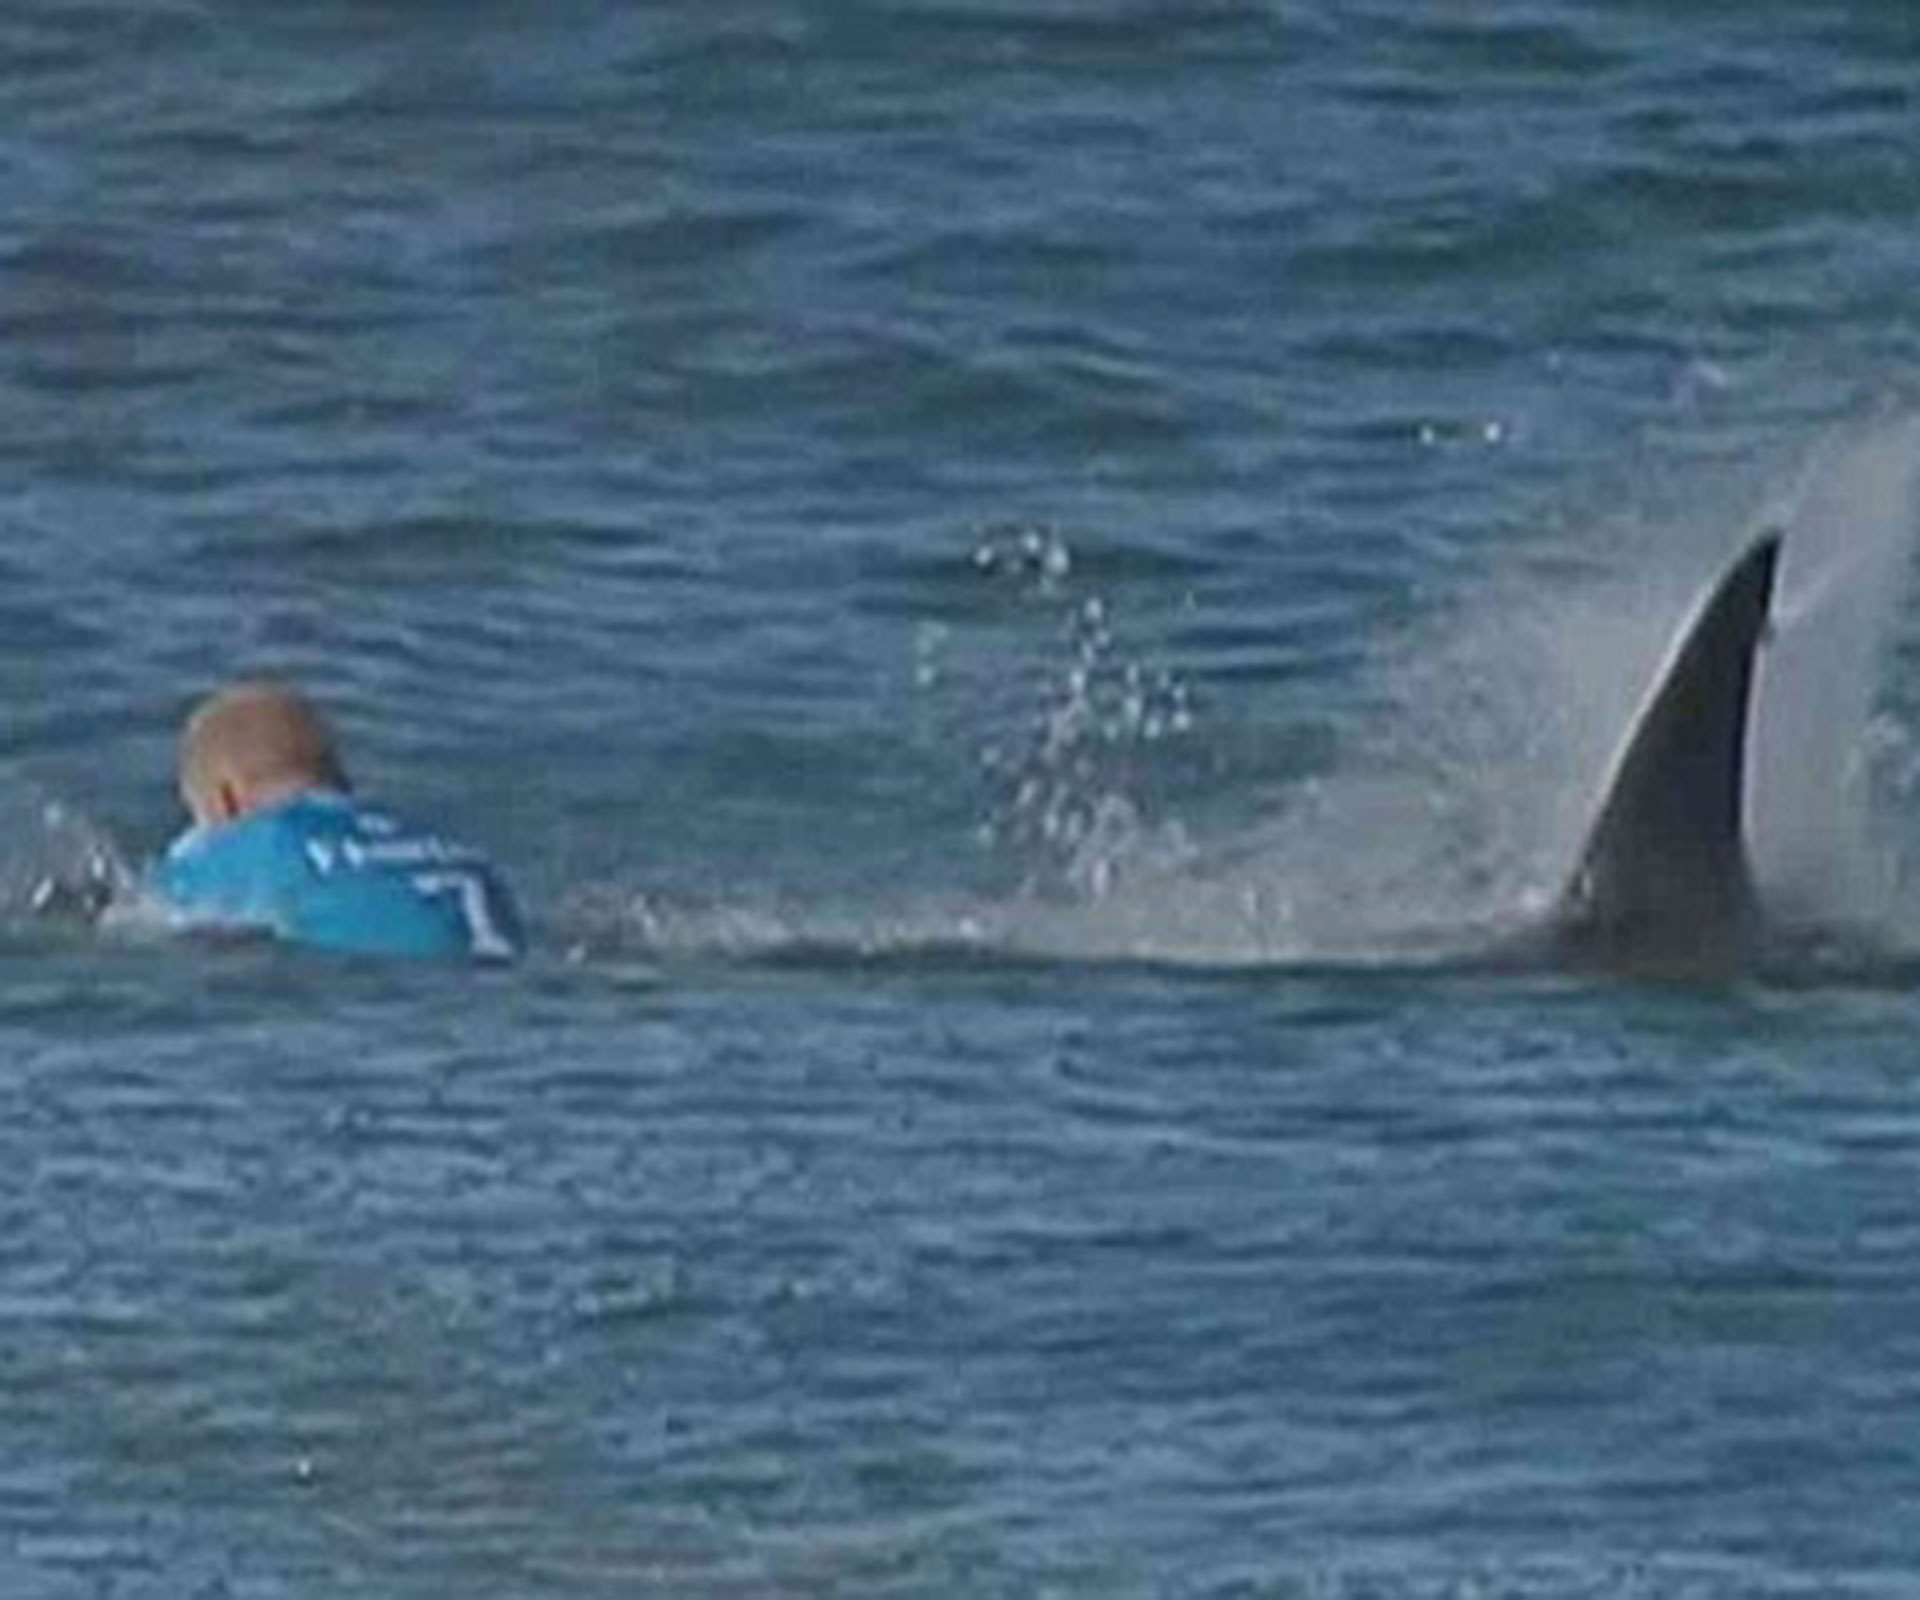 Shark attacks surfer Mick Fanning live on TV